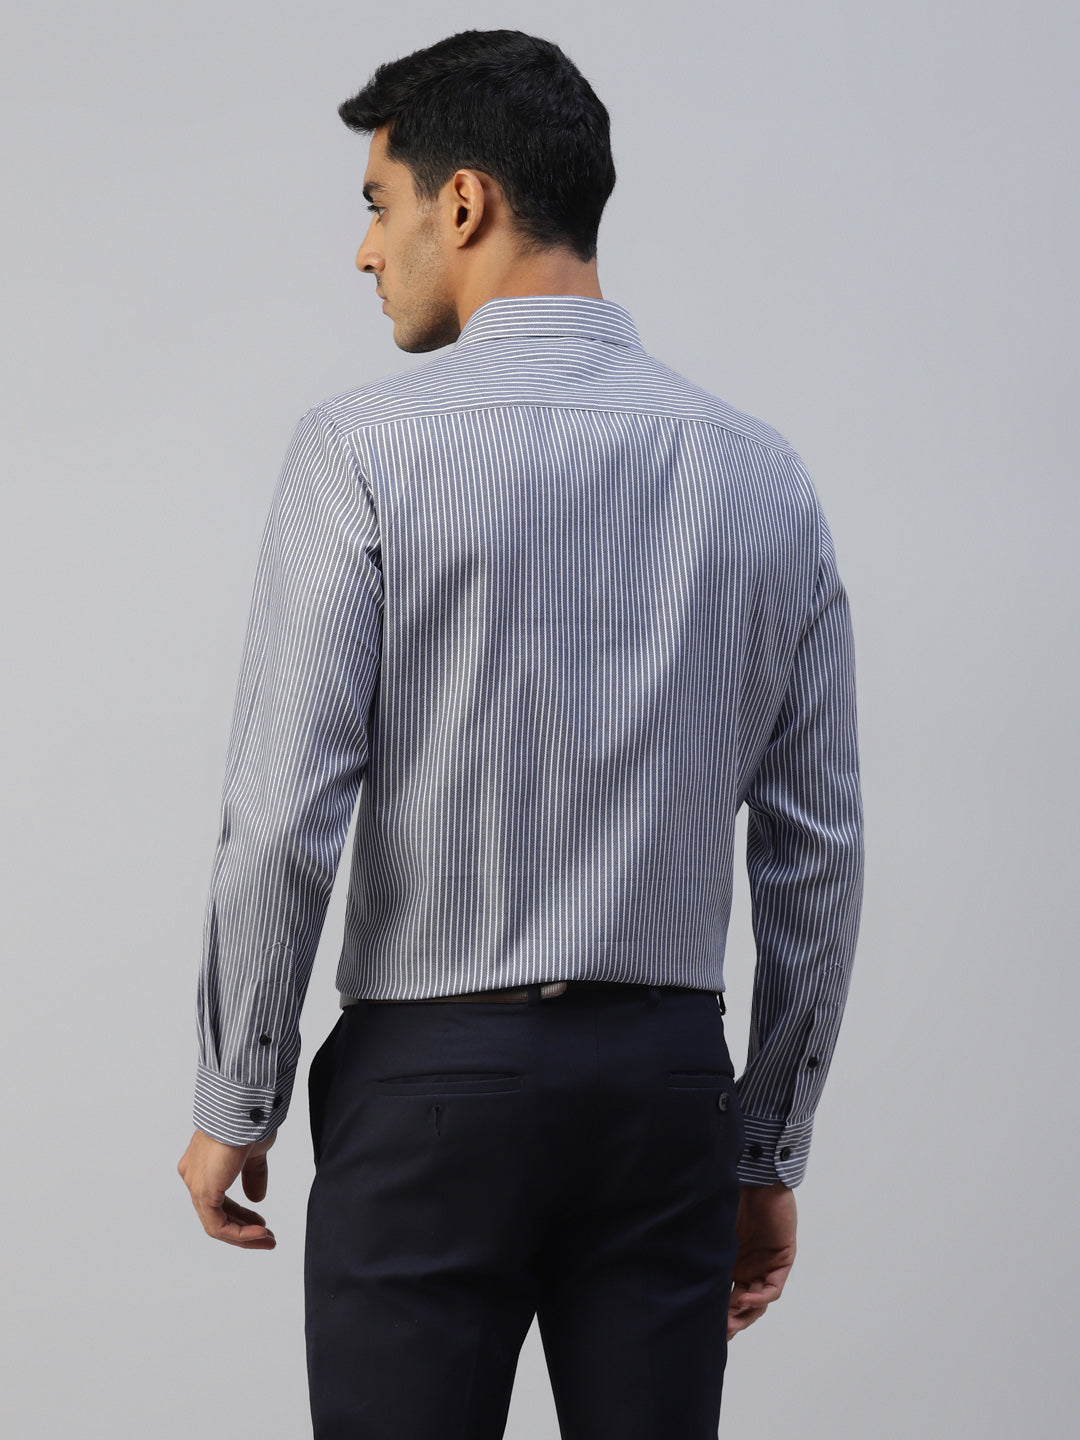 Don Vino Men's Full Sleeves Blue Stripes Formal Shirt